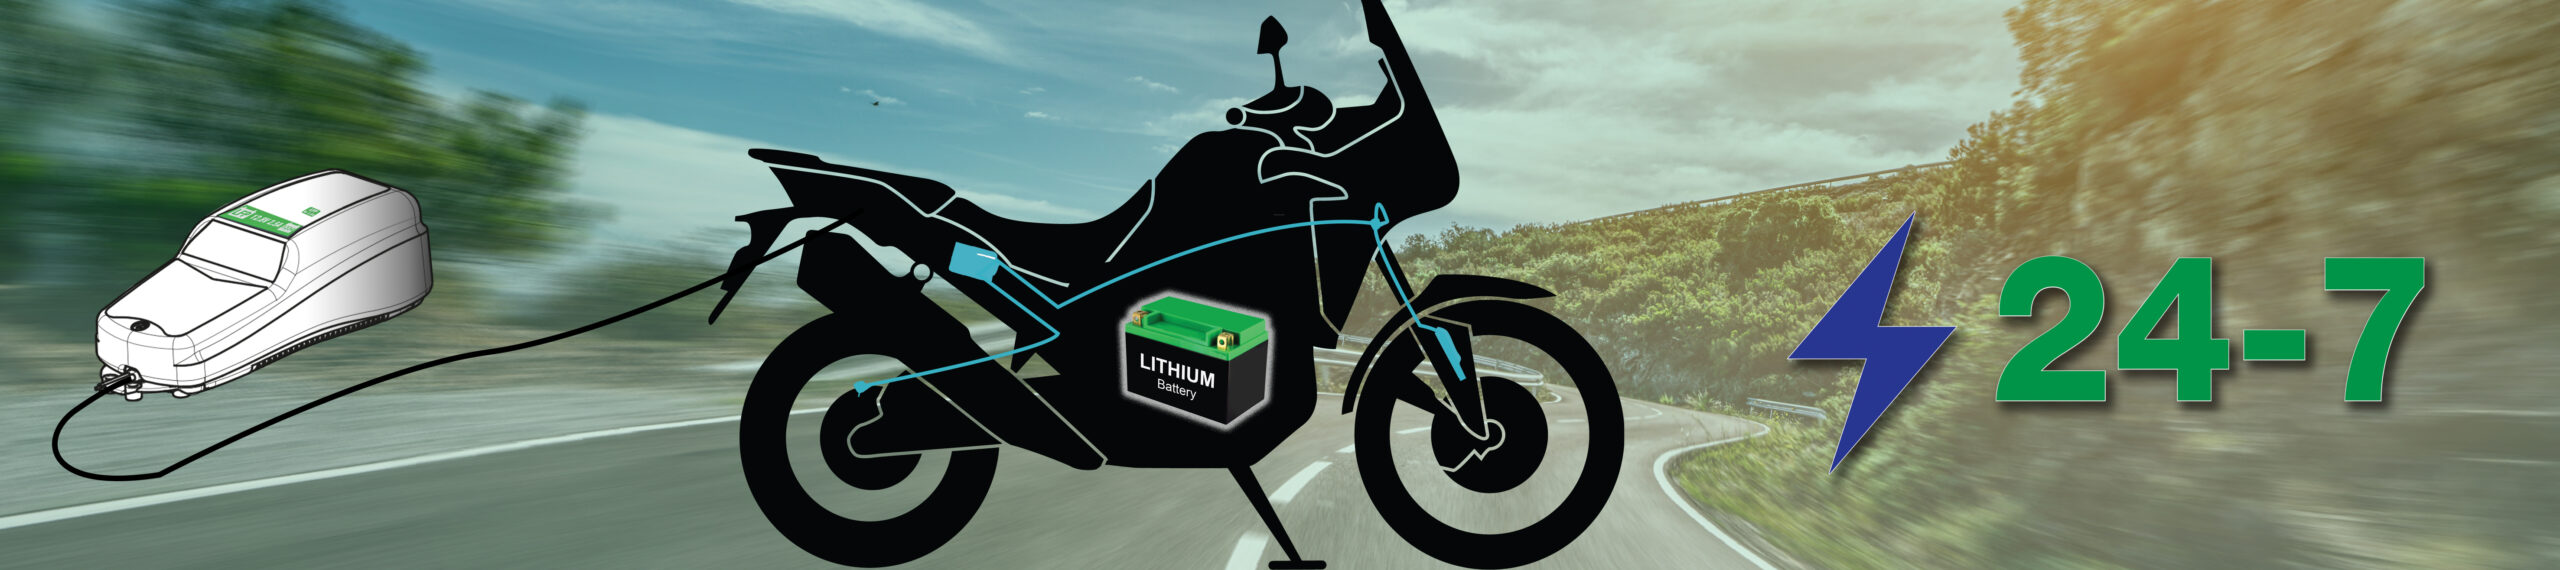 Lithium accu 24-7 veilig onderhoud